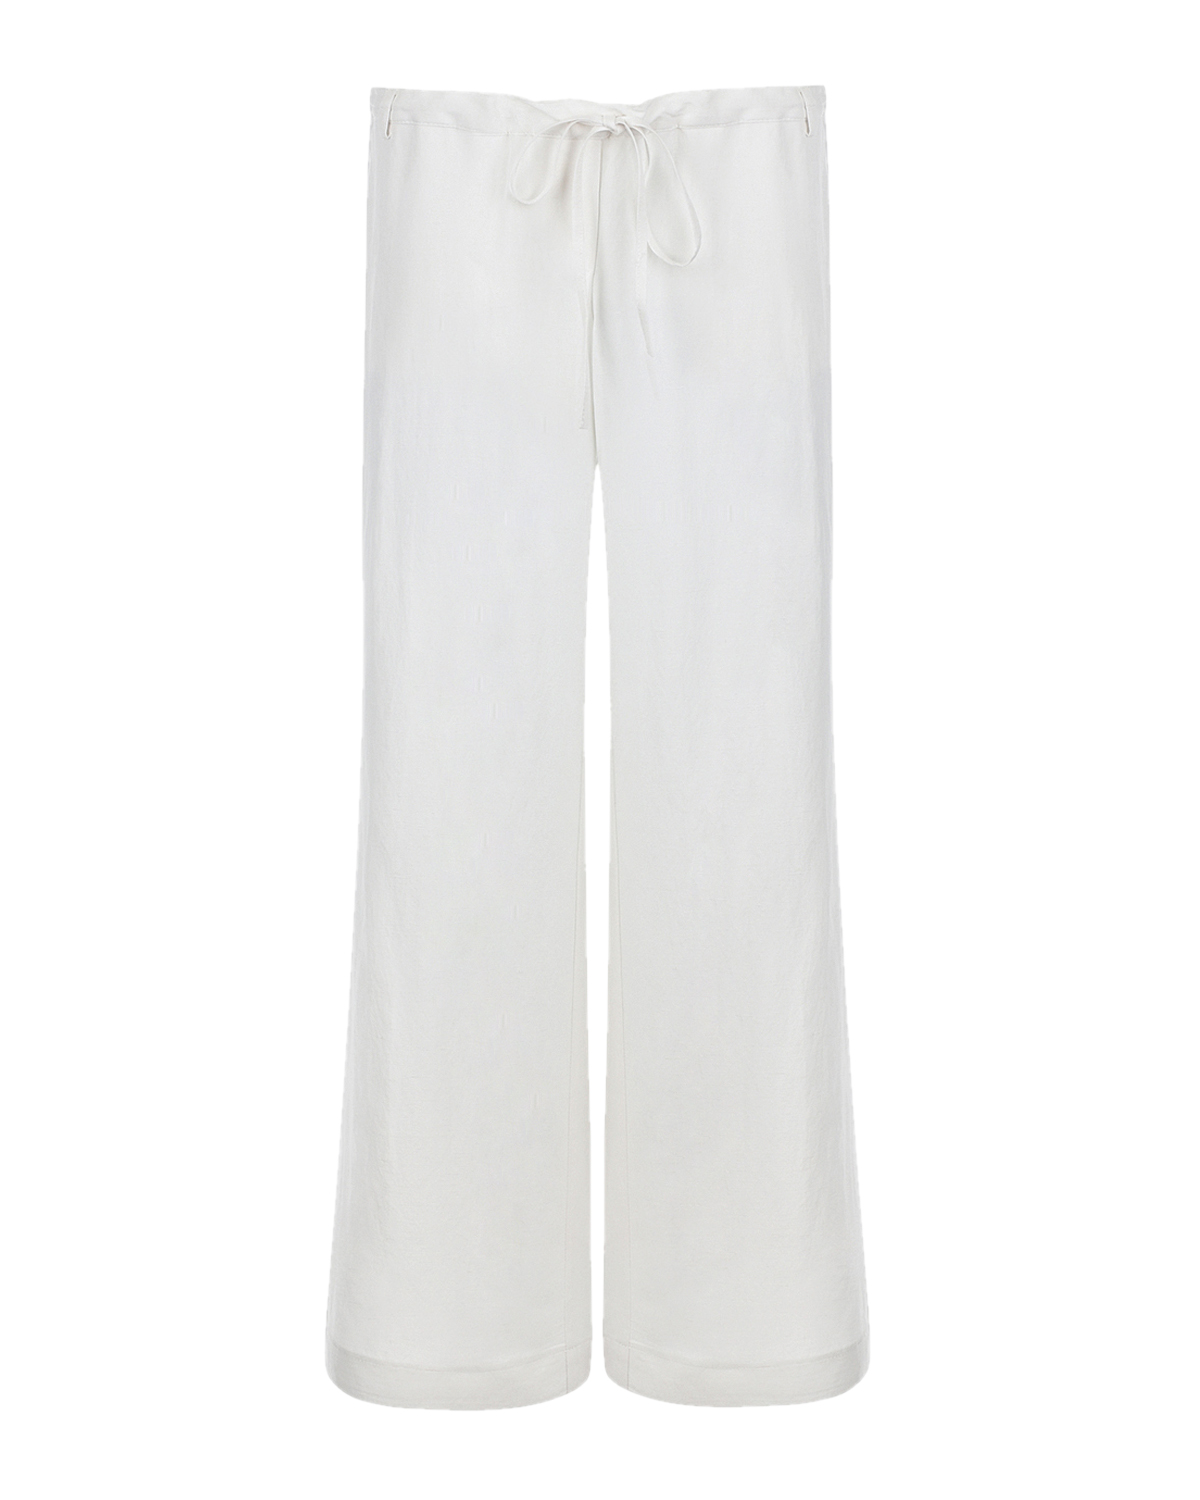 Белые льняные брюки Pietro Brunelli, размер 42, цвет белый - фото 1